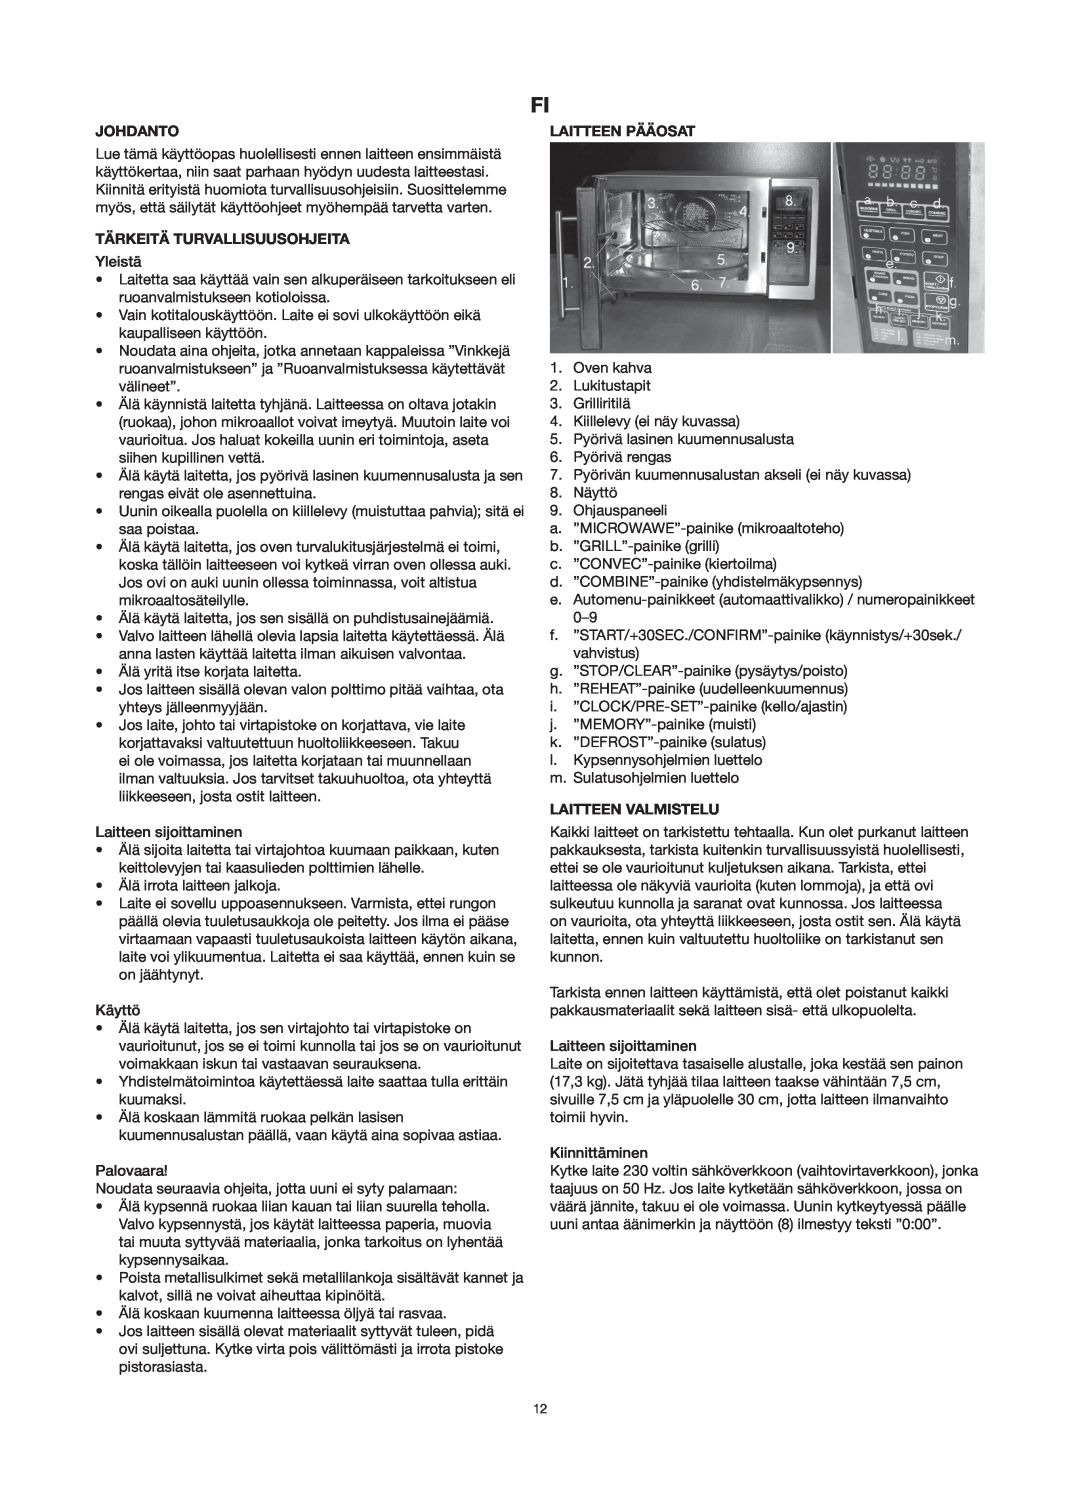 Melissa 753-125 manual Johdanto, Tärkeitä Turvallisuusohjeita, Laitteen Pääosat, Laitteen Valmistelu 